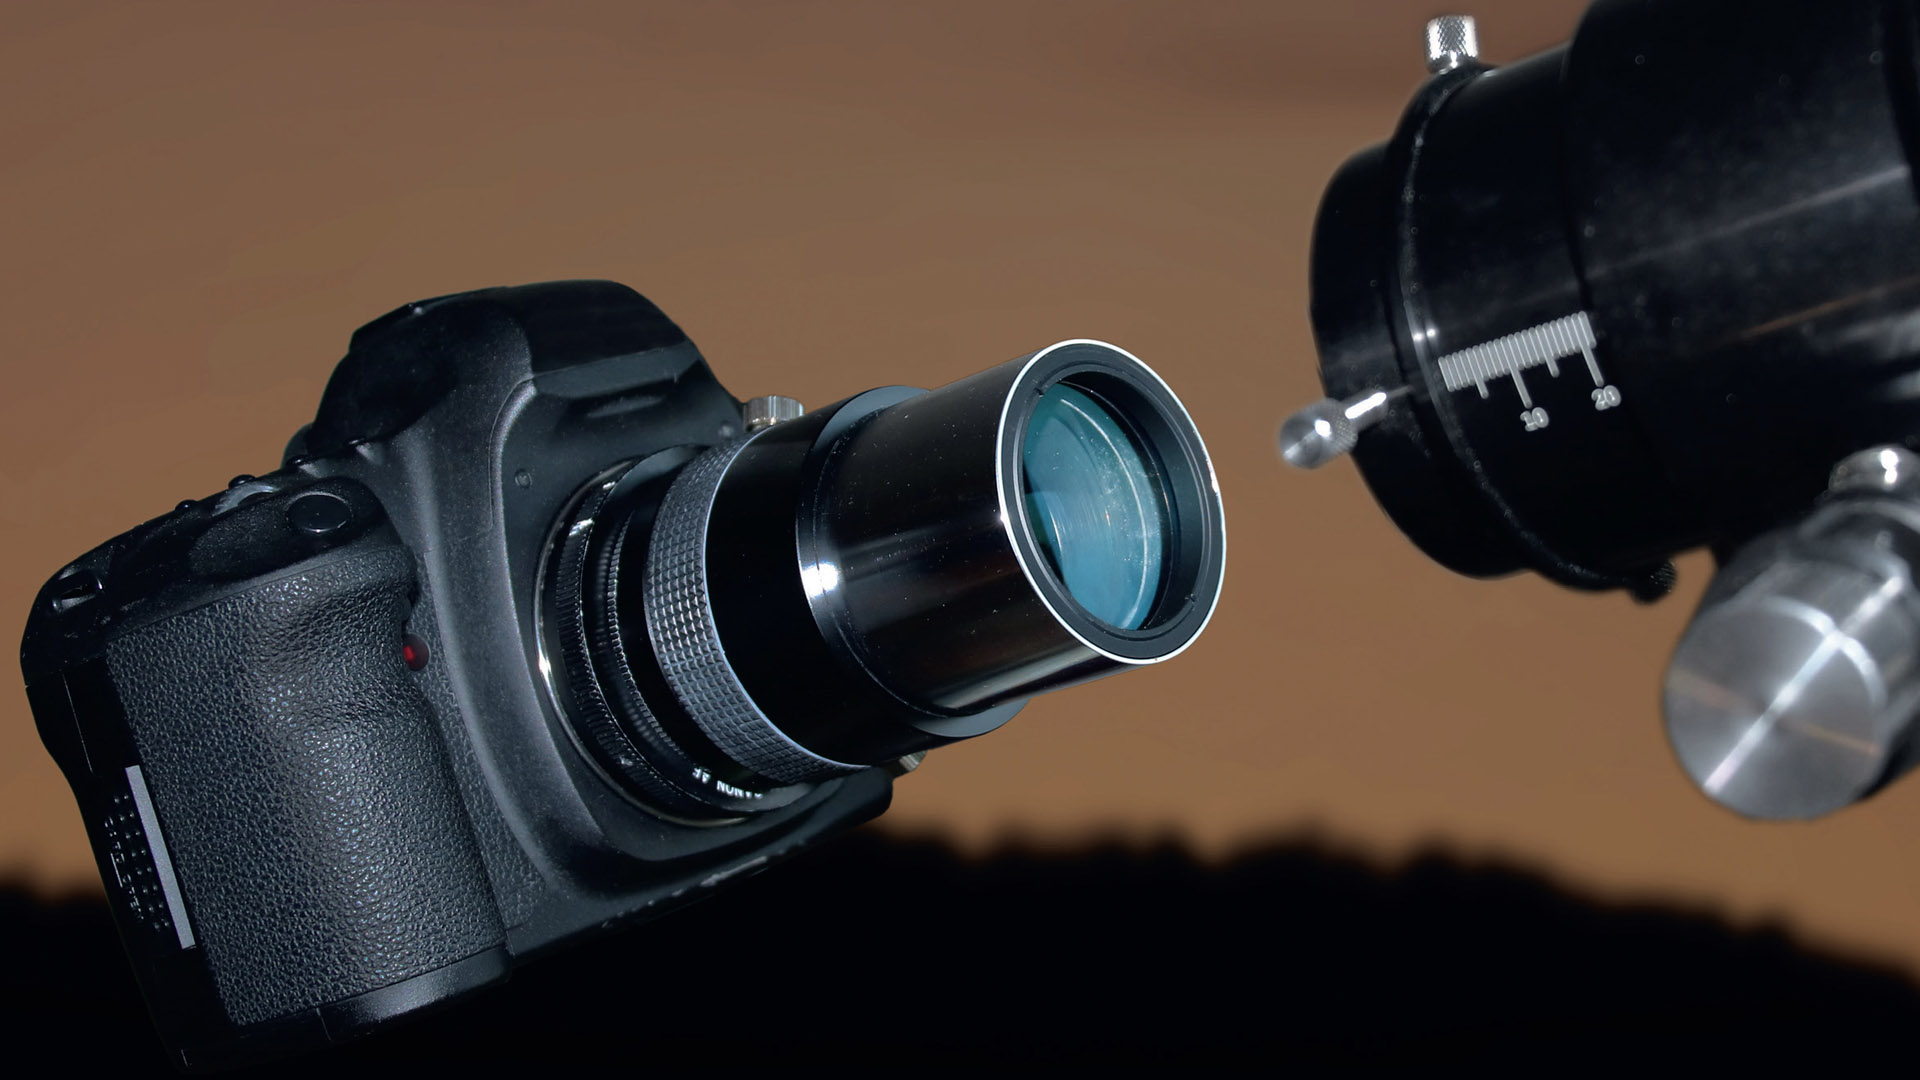 Reduktor to system soczewek skracający ogniskową teleskopu. Dostępne są one w różnych wersjach i z różnymi współczynnikami redukcji. M. Weigand